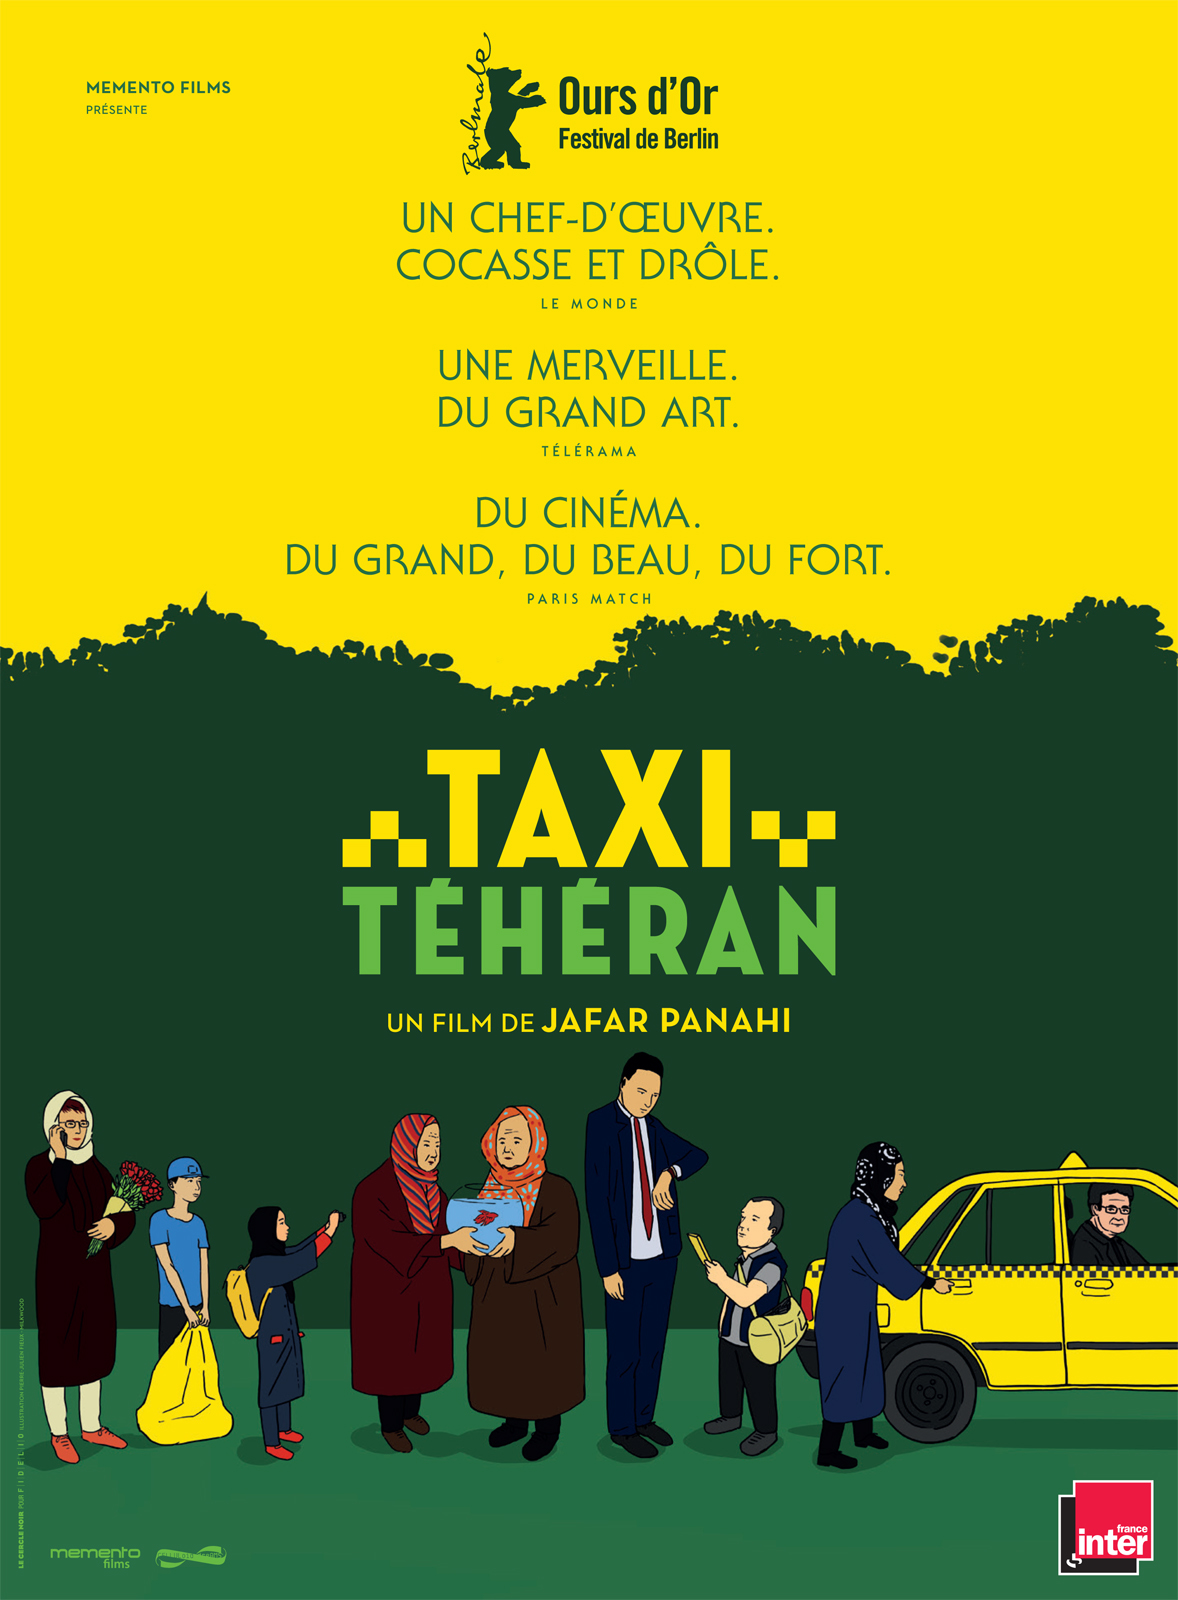 Recensione di “Taxi Teheran”, ultimo film di Jafar Panahi